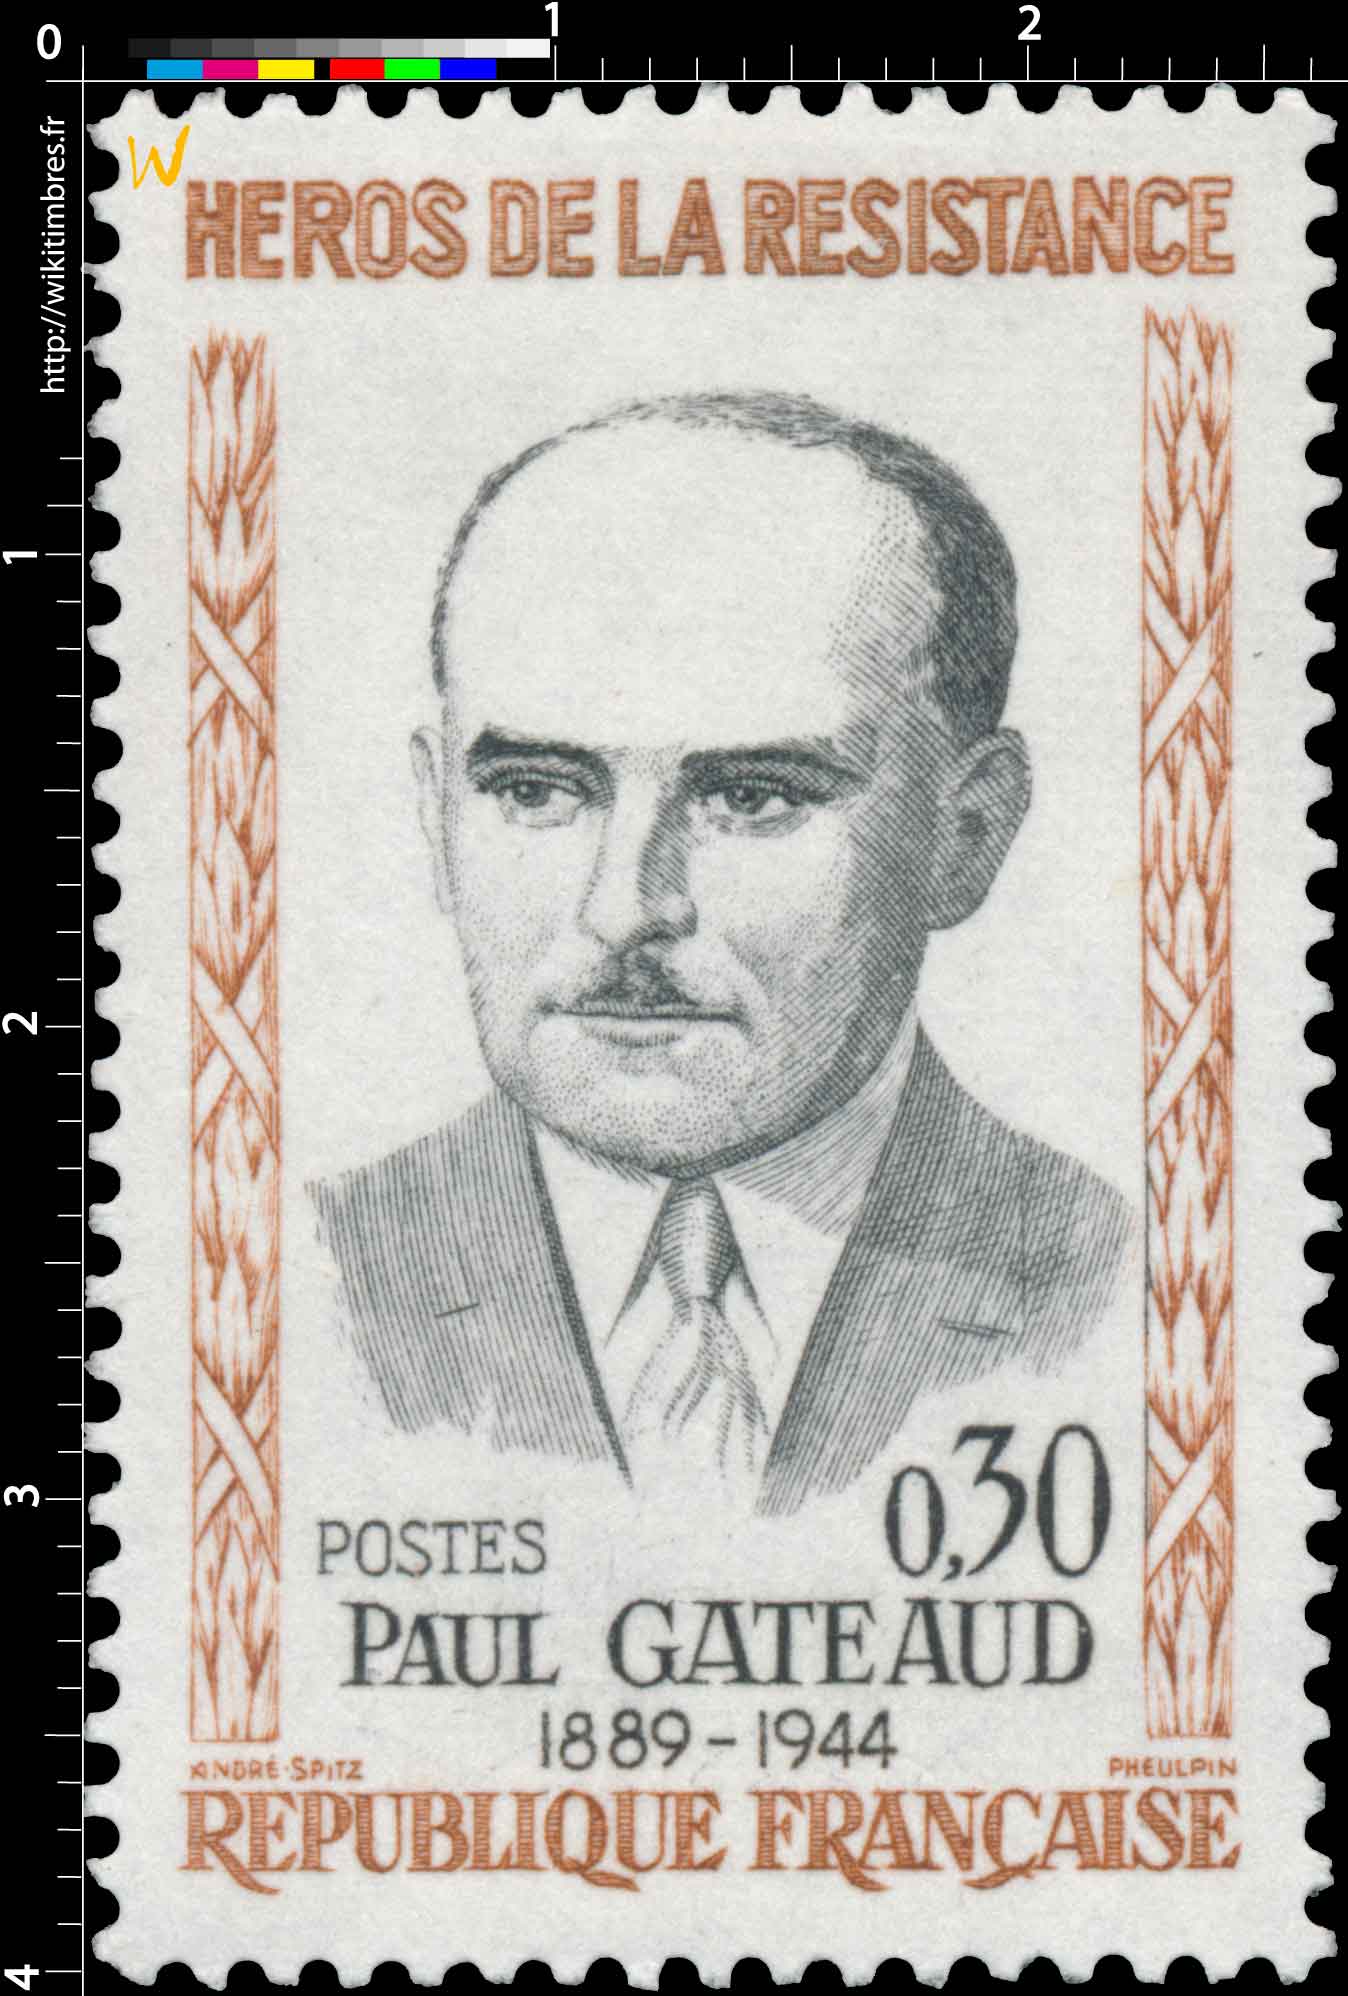 HÉROS DE LA RÉSISTANCE PAUL GATEAUD 1889-1944